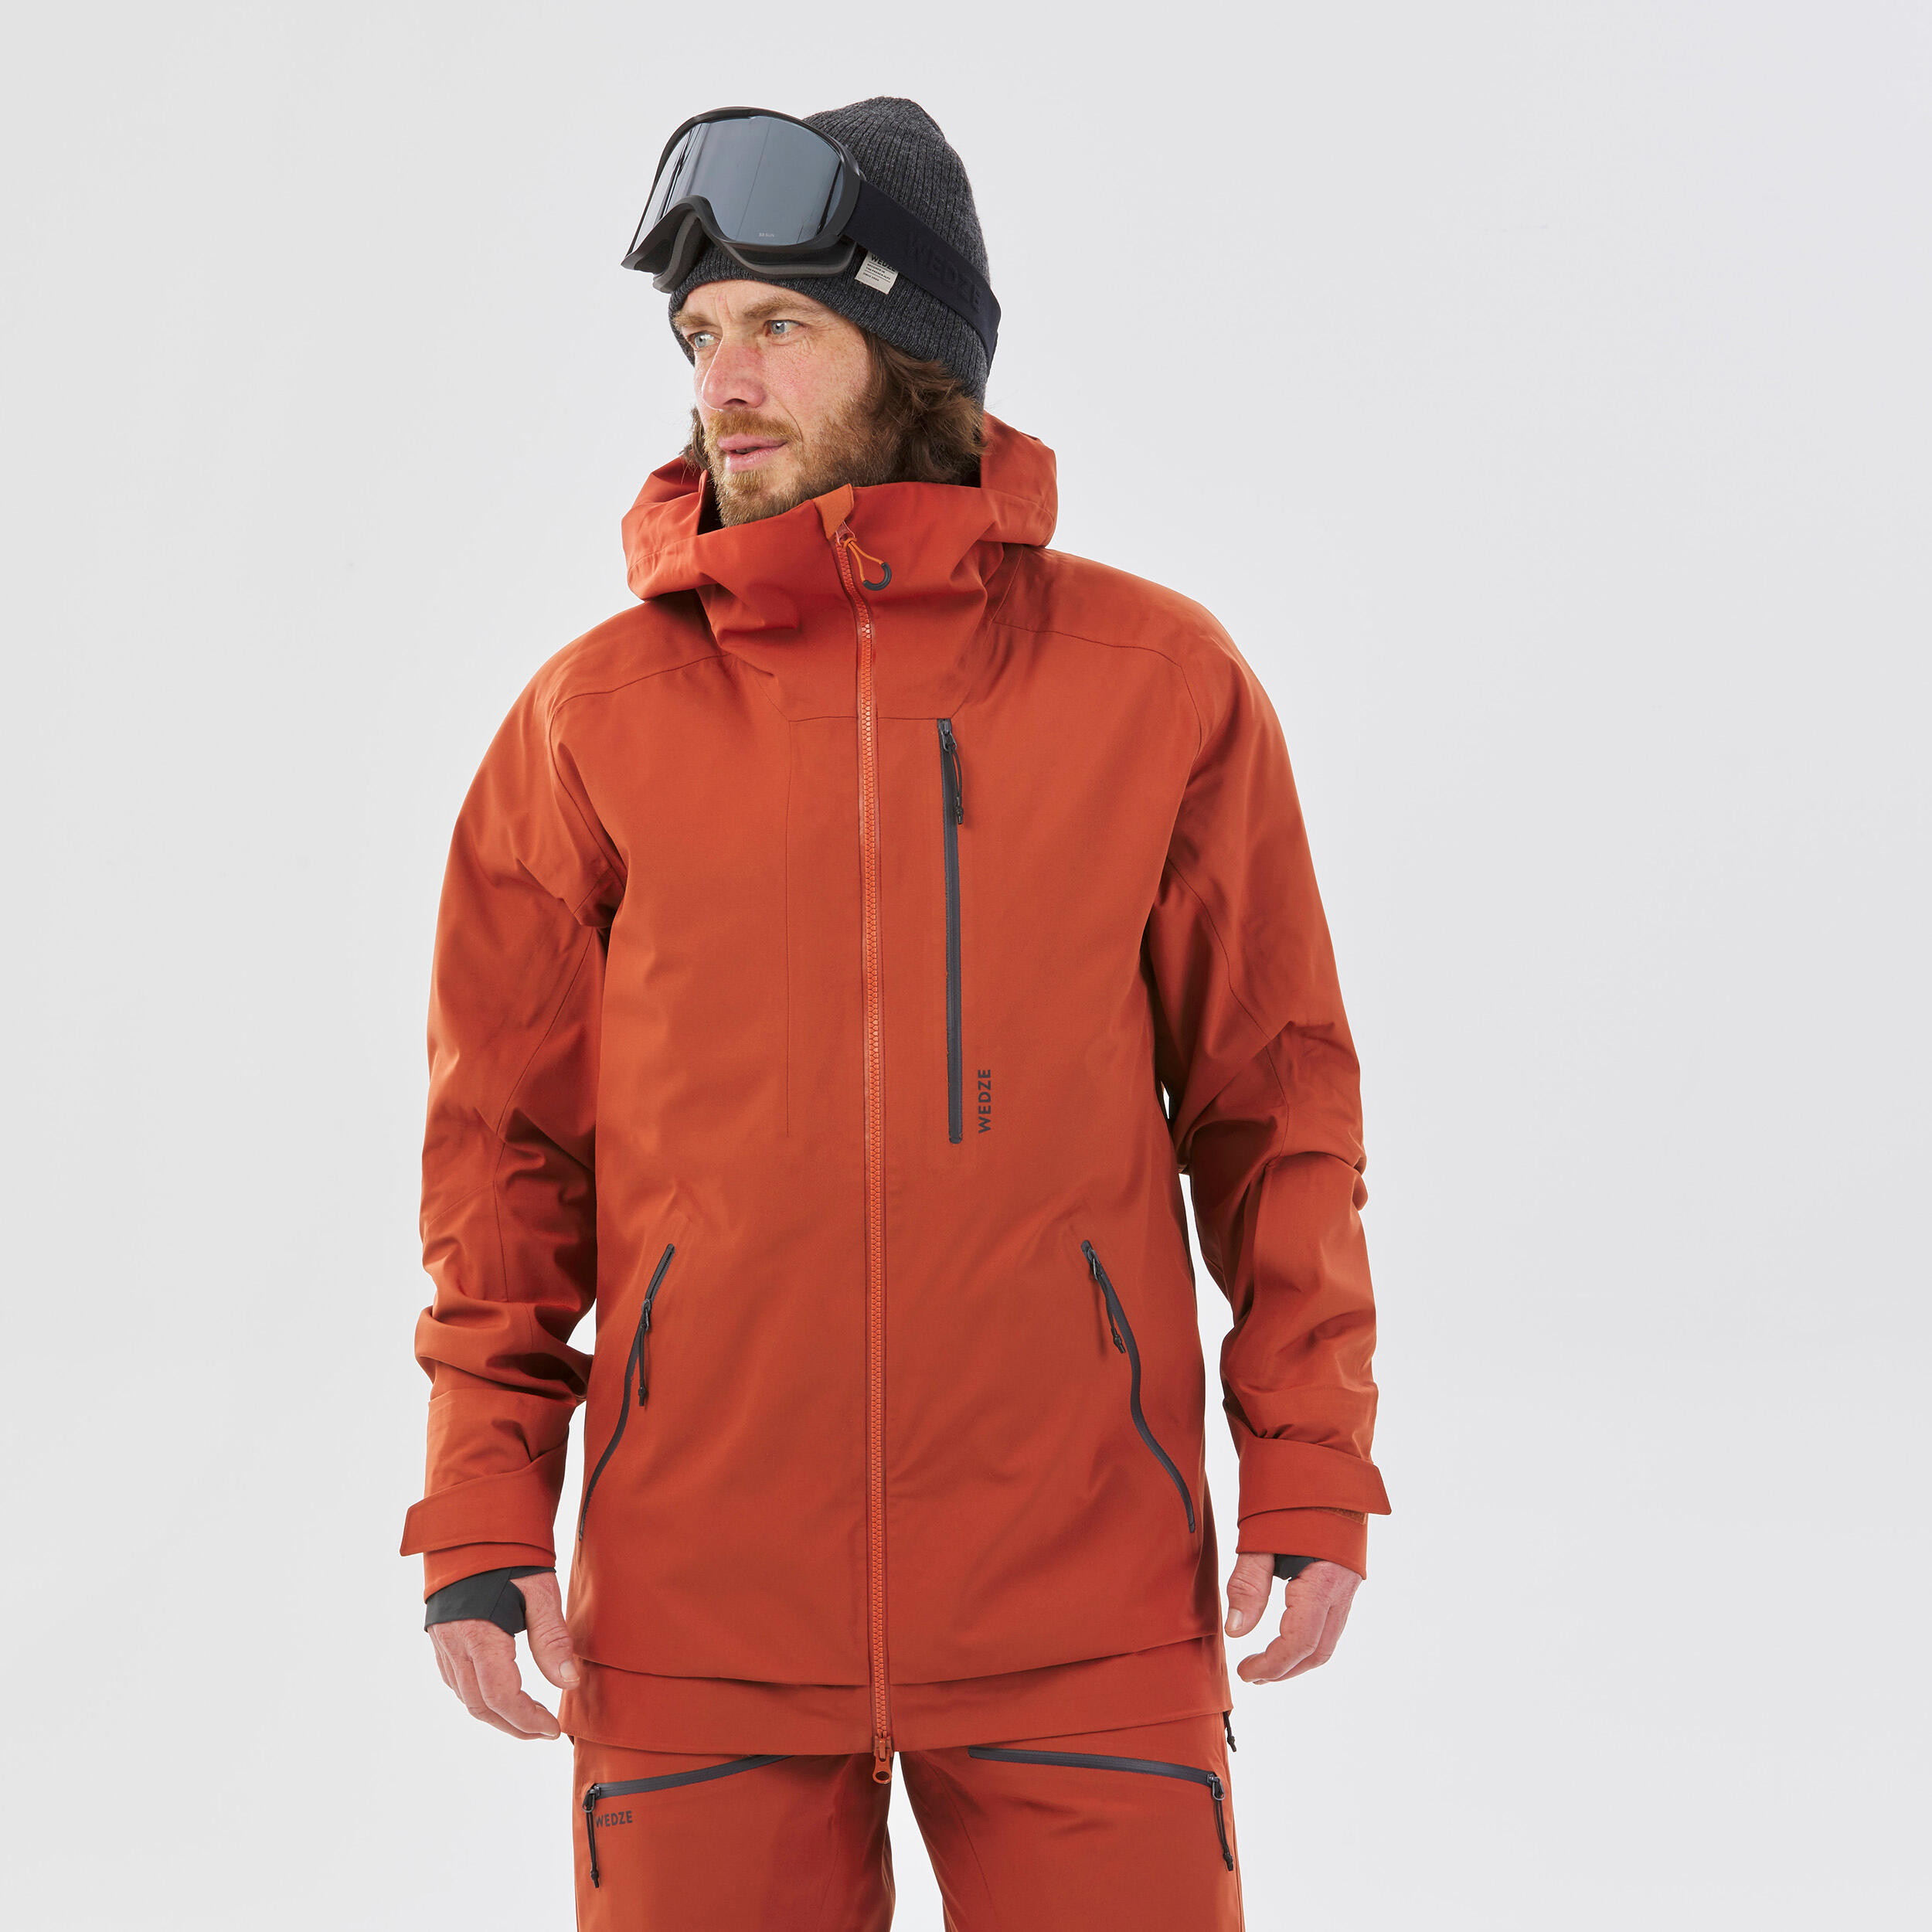 Men's Ski Jacket - FR500 - Terracotta 4/16